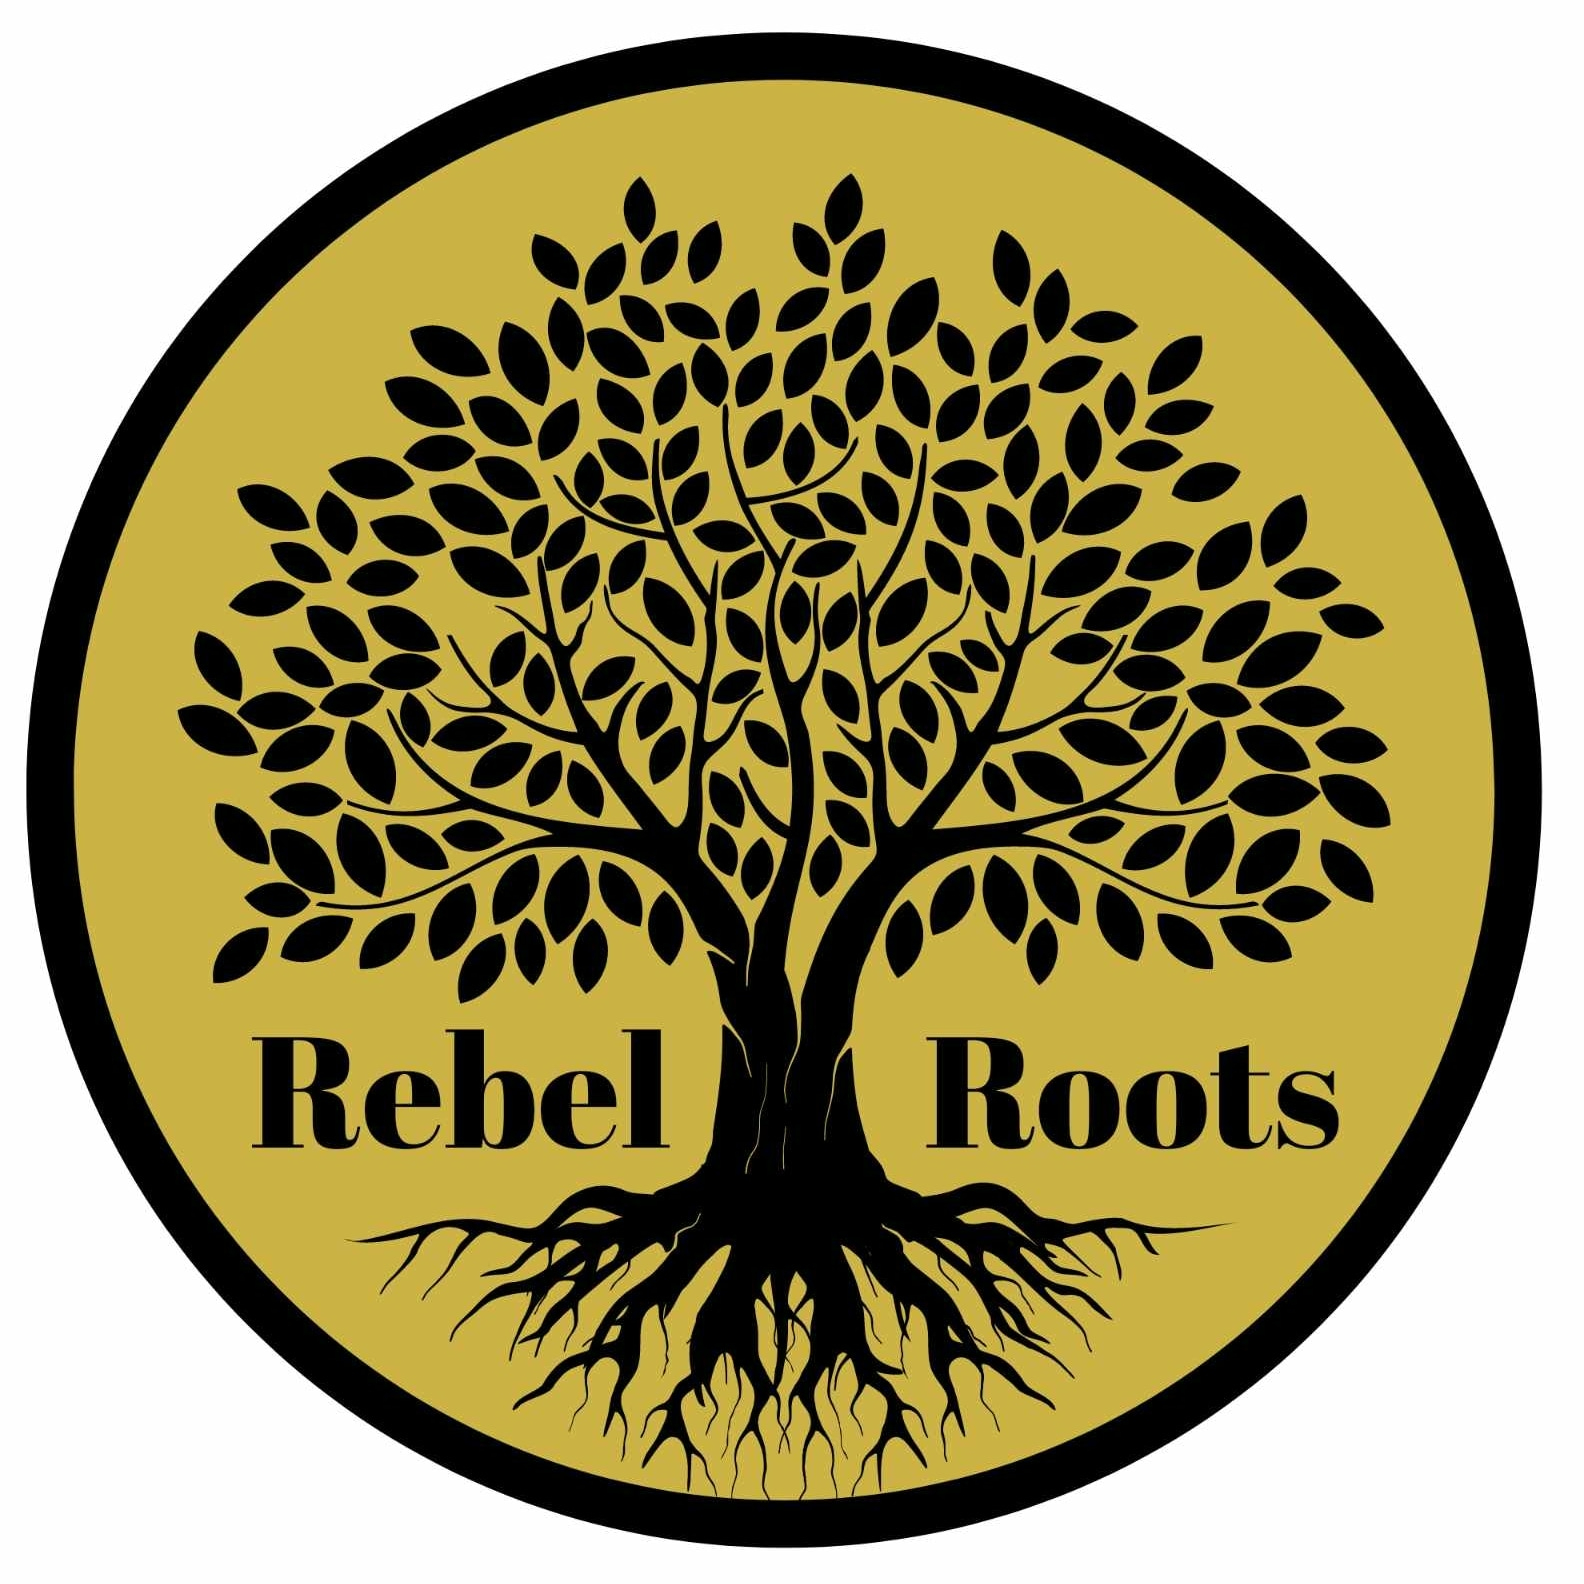 Rebel Roots